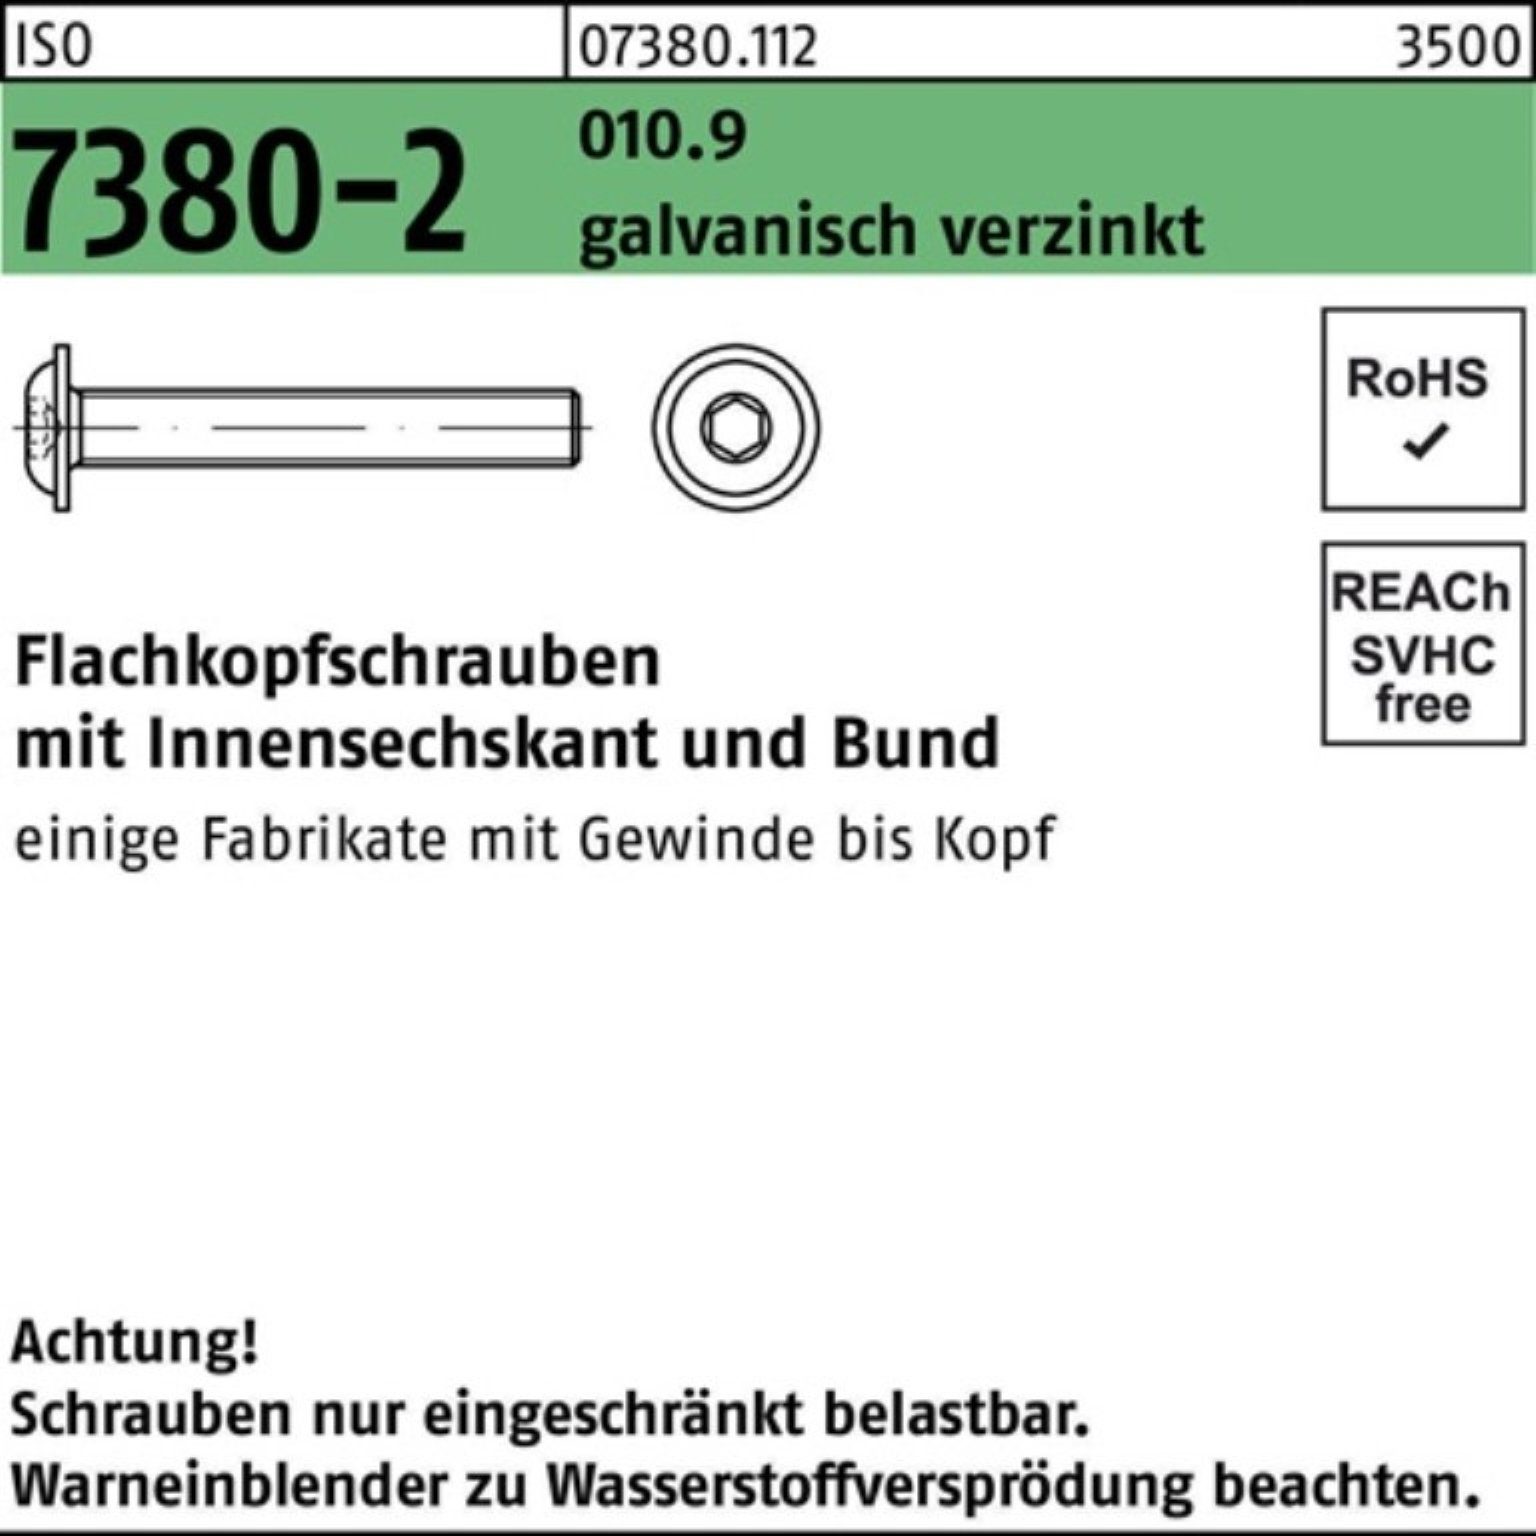 Bund/Innen-6kt M6x14 Reyher Schraube 010.9 500er 7380-2 gal Flachkopfschraube Pack ISO